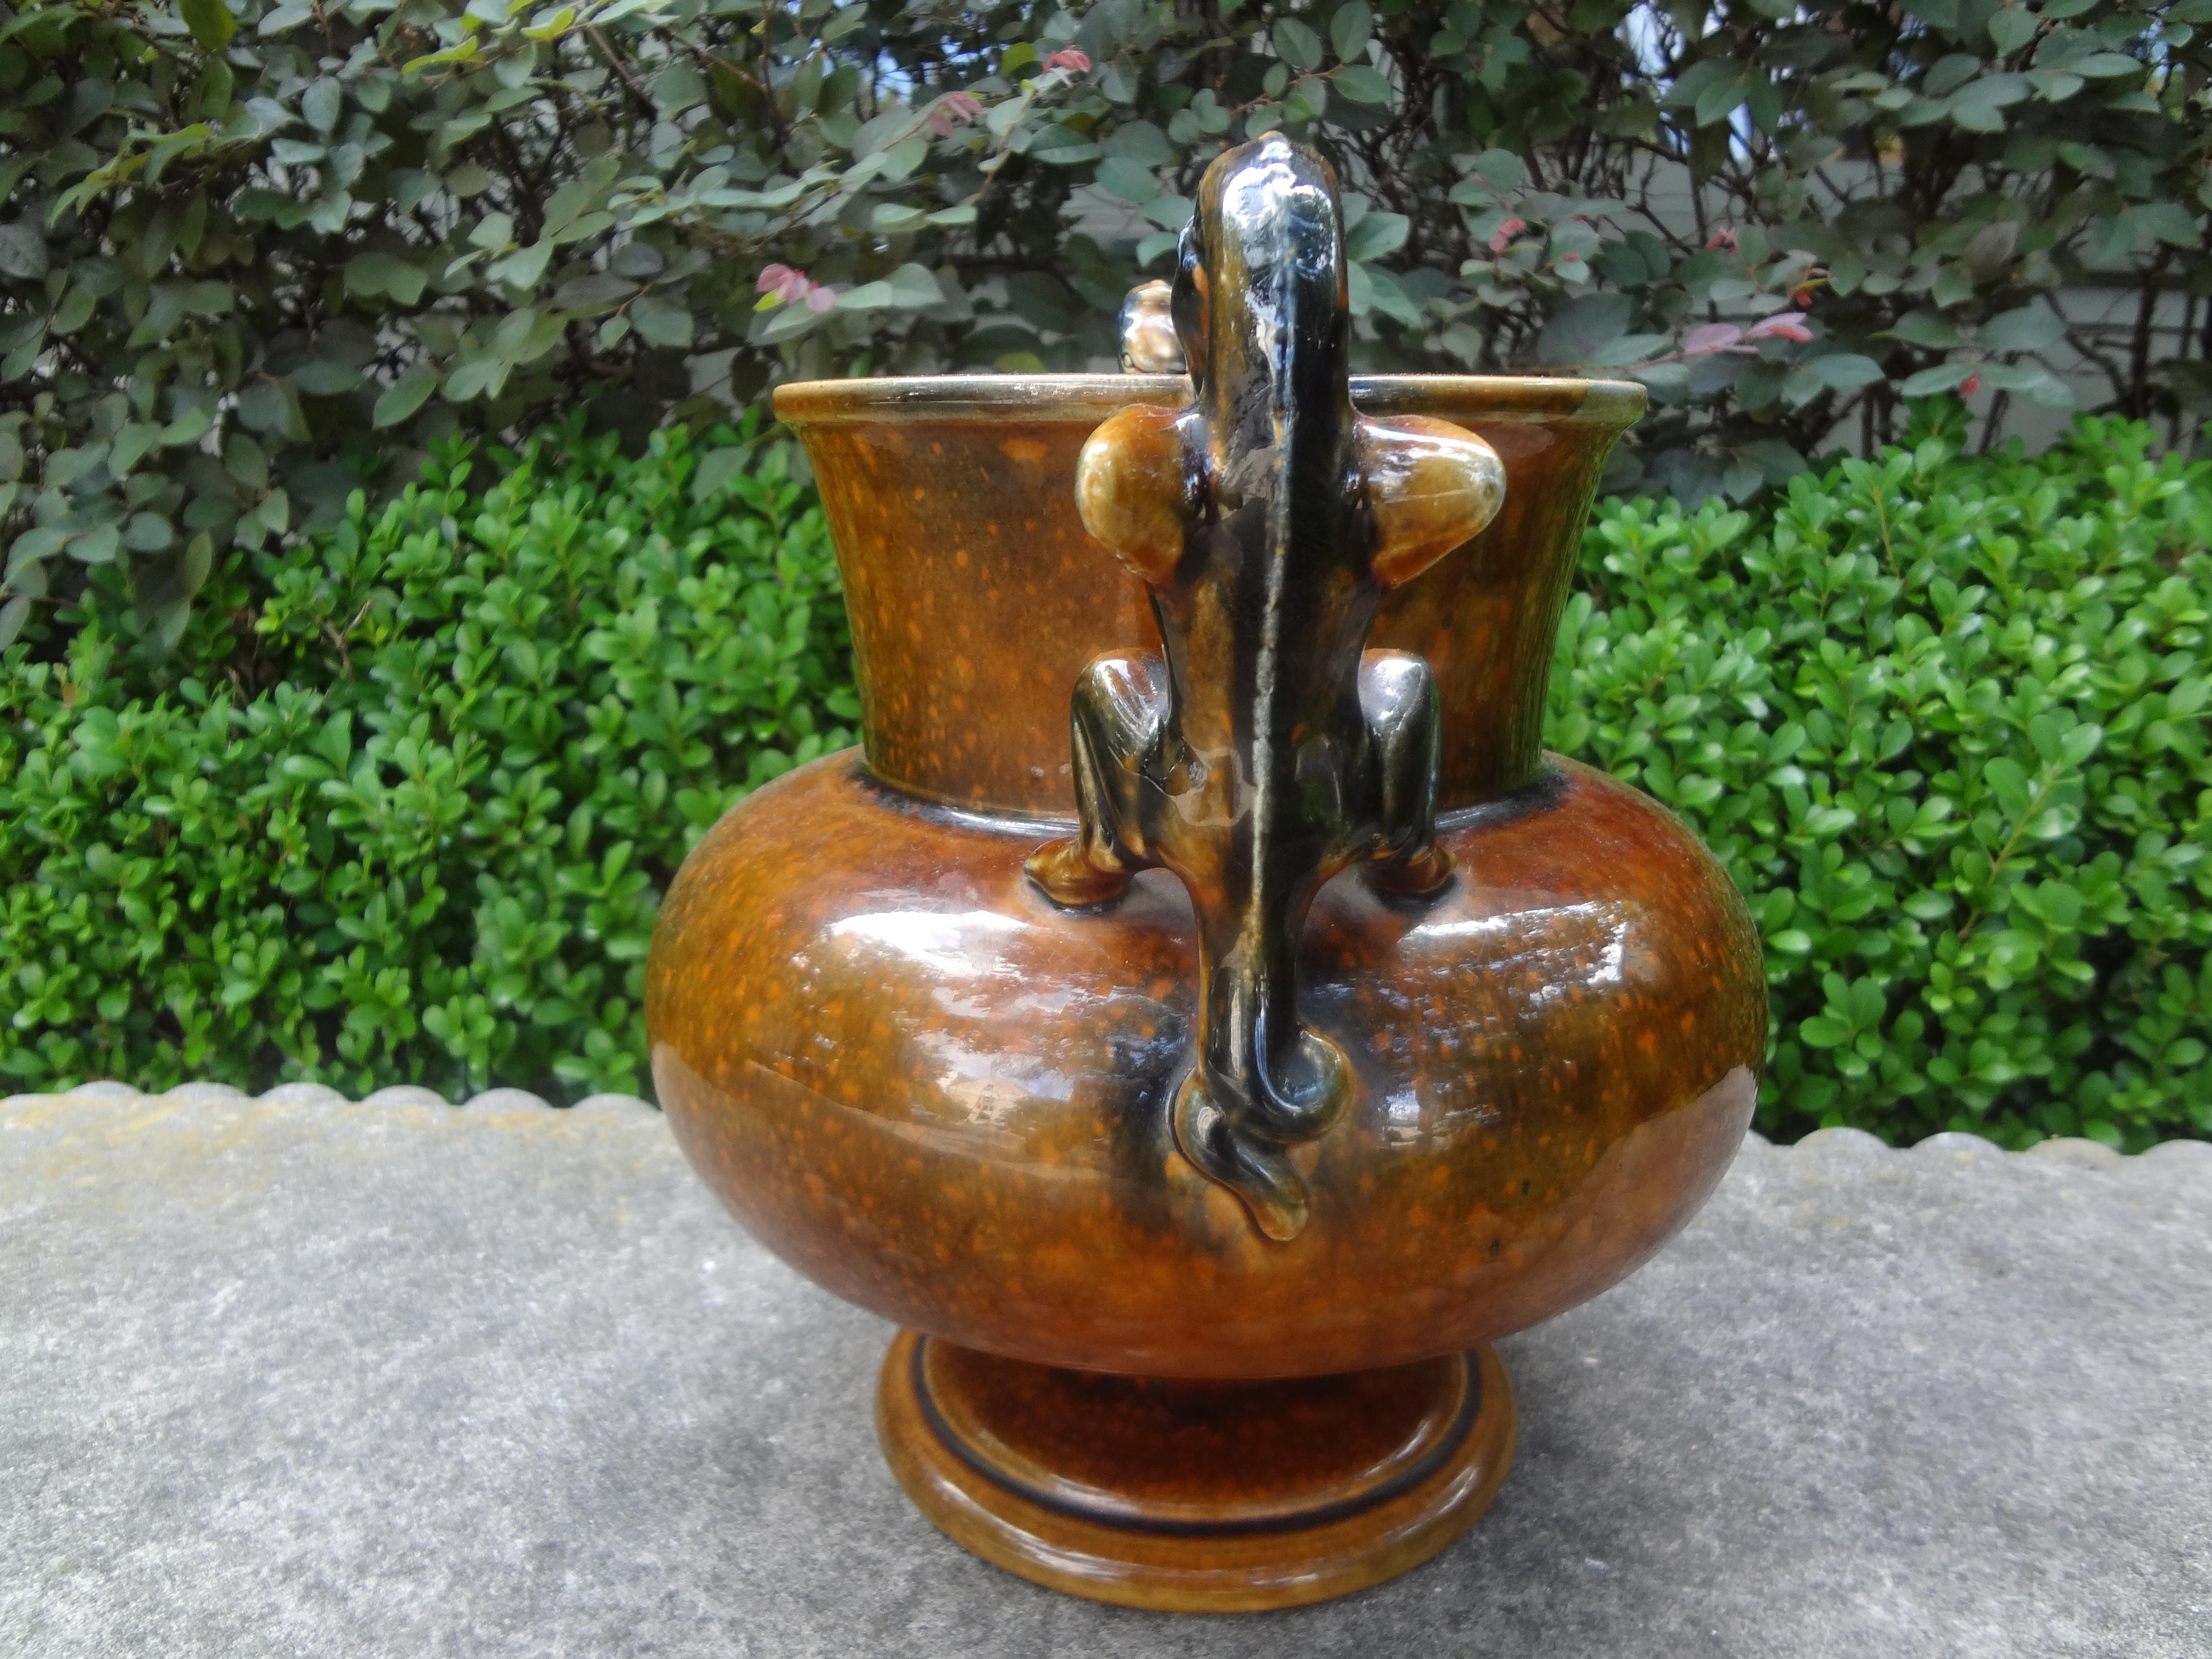 Hübsche glasierte Keramikurne im französischen Sarreguemines-Stil, Vasengefäß mit Greifengriffen. Diese interessante Urne im Barbotine-Stil hat eine schöne Glasur und stammt aus den 1920er Jahren.